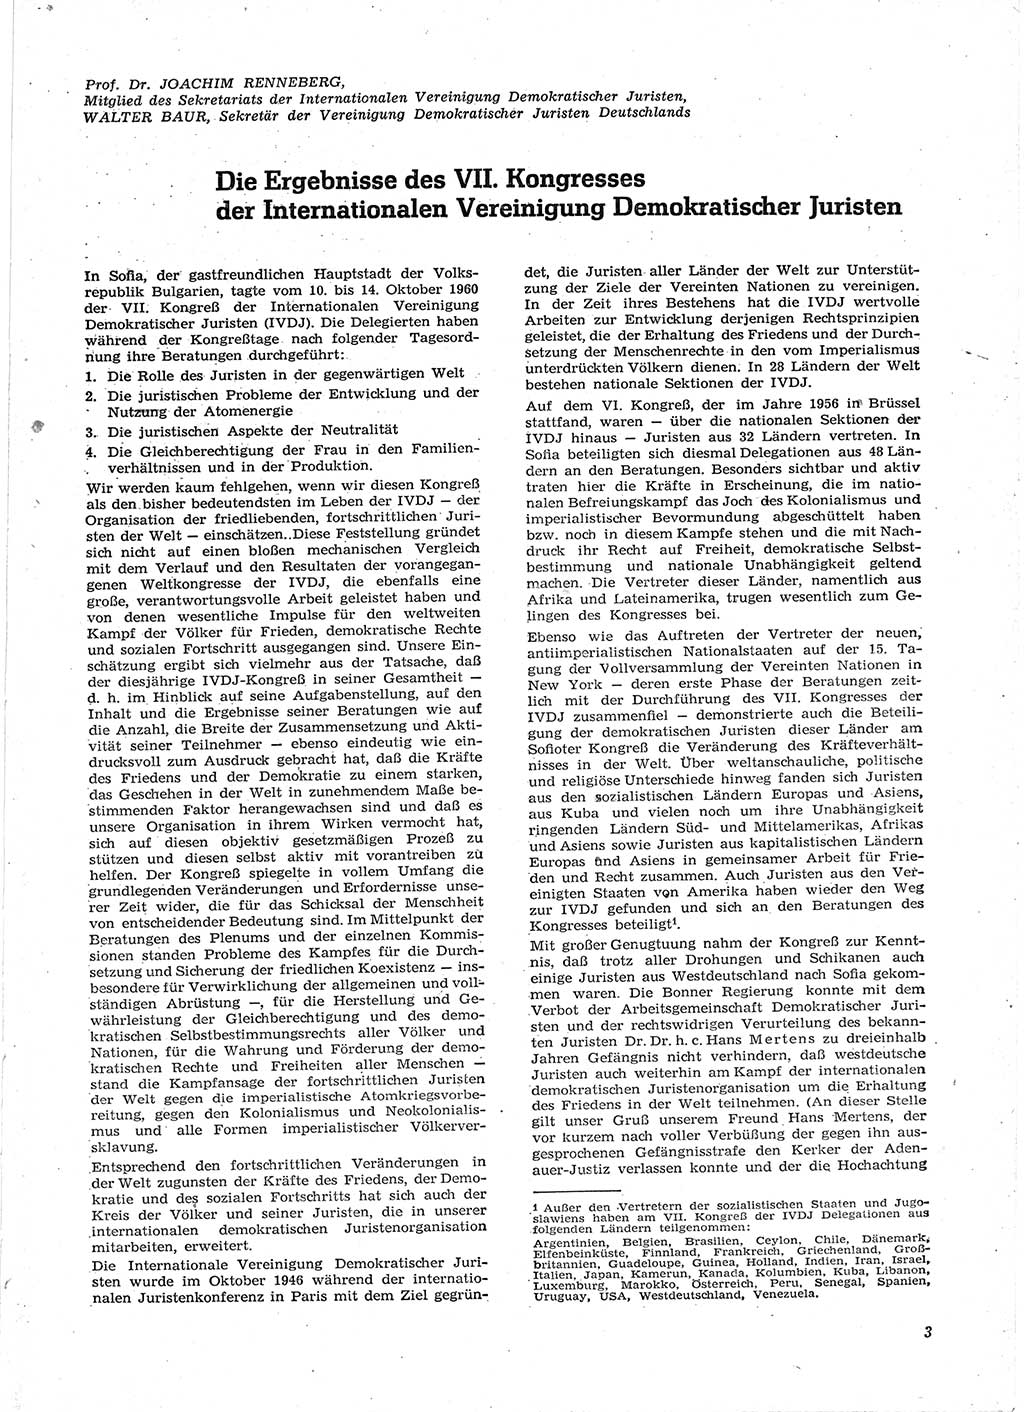 Neue Justiz (NJ), Zeitschrift für Recht und Rechtswissenschaft [Deutsche Demokratische Republik (DDR)], 15. Jahrgang 1961, Seite 3 (NJ DDR 1961, S. 3)